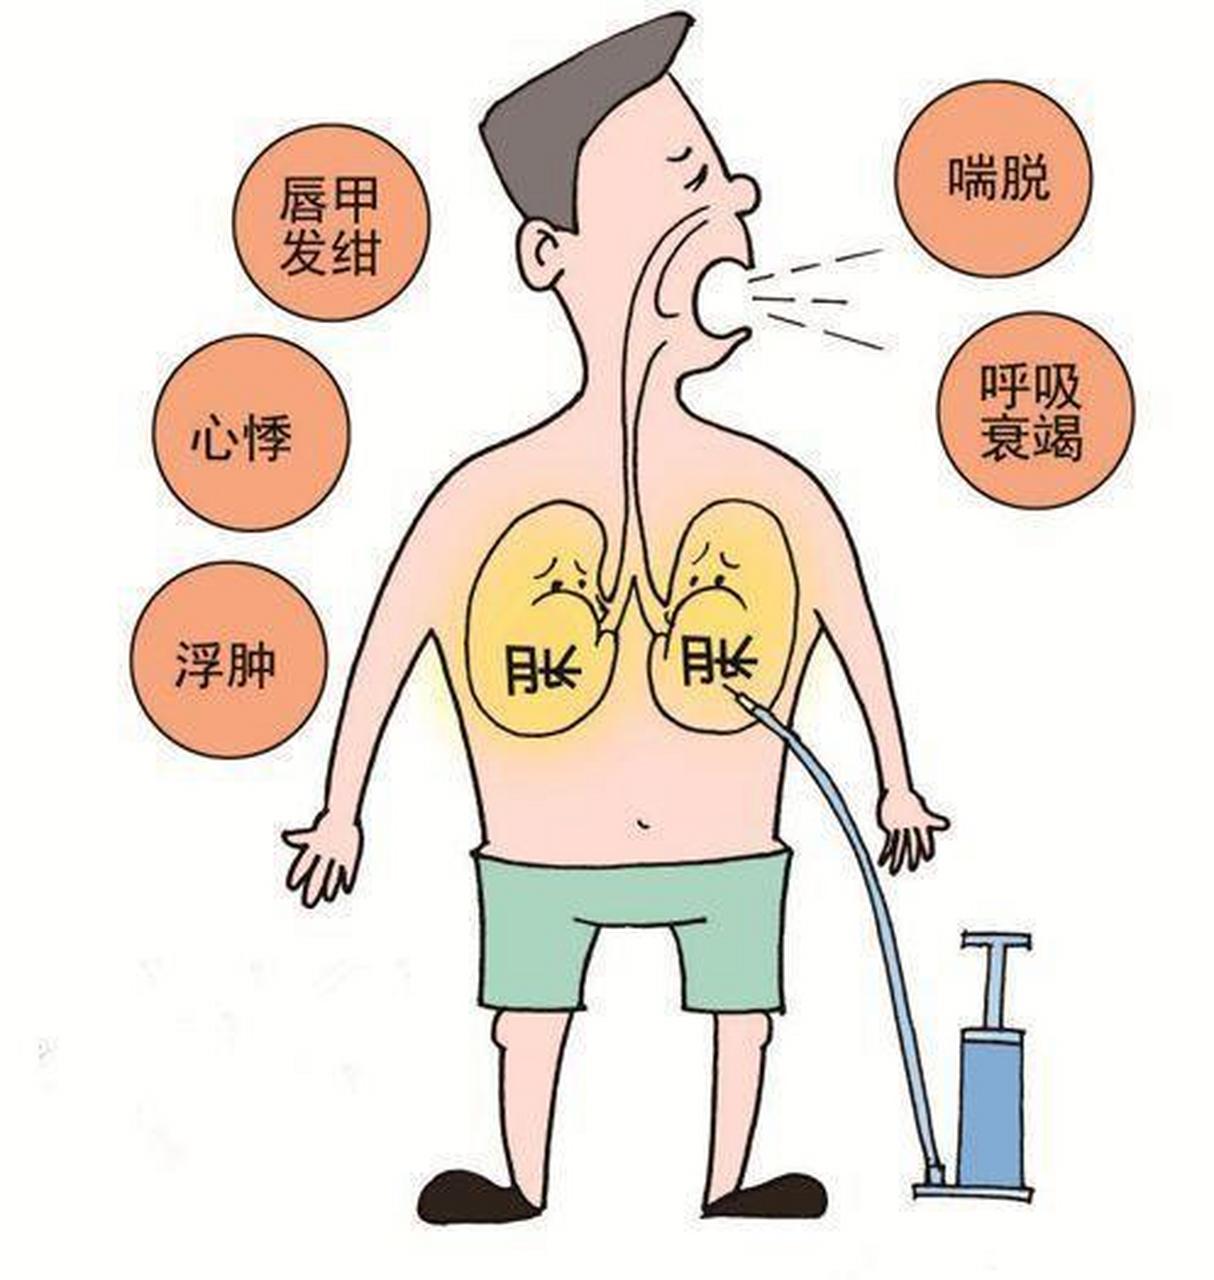 肺气肿的症状图片